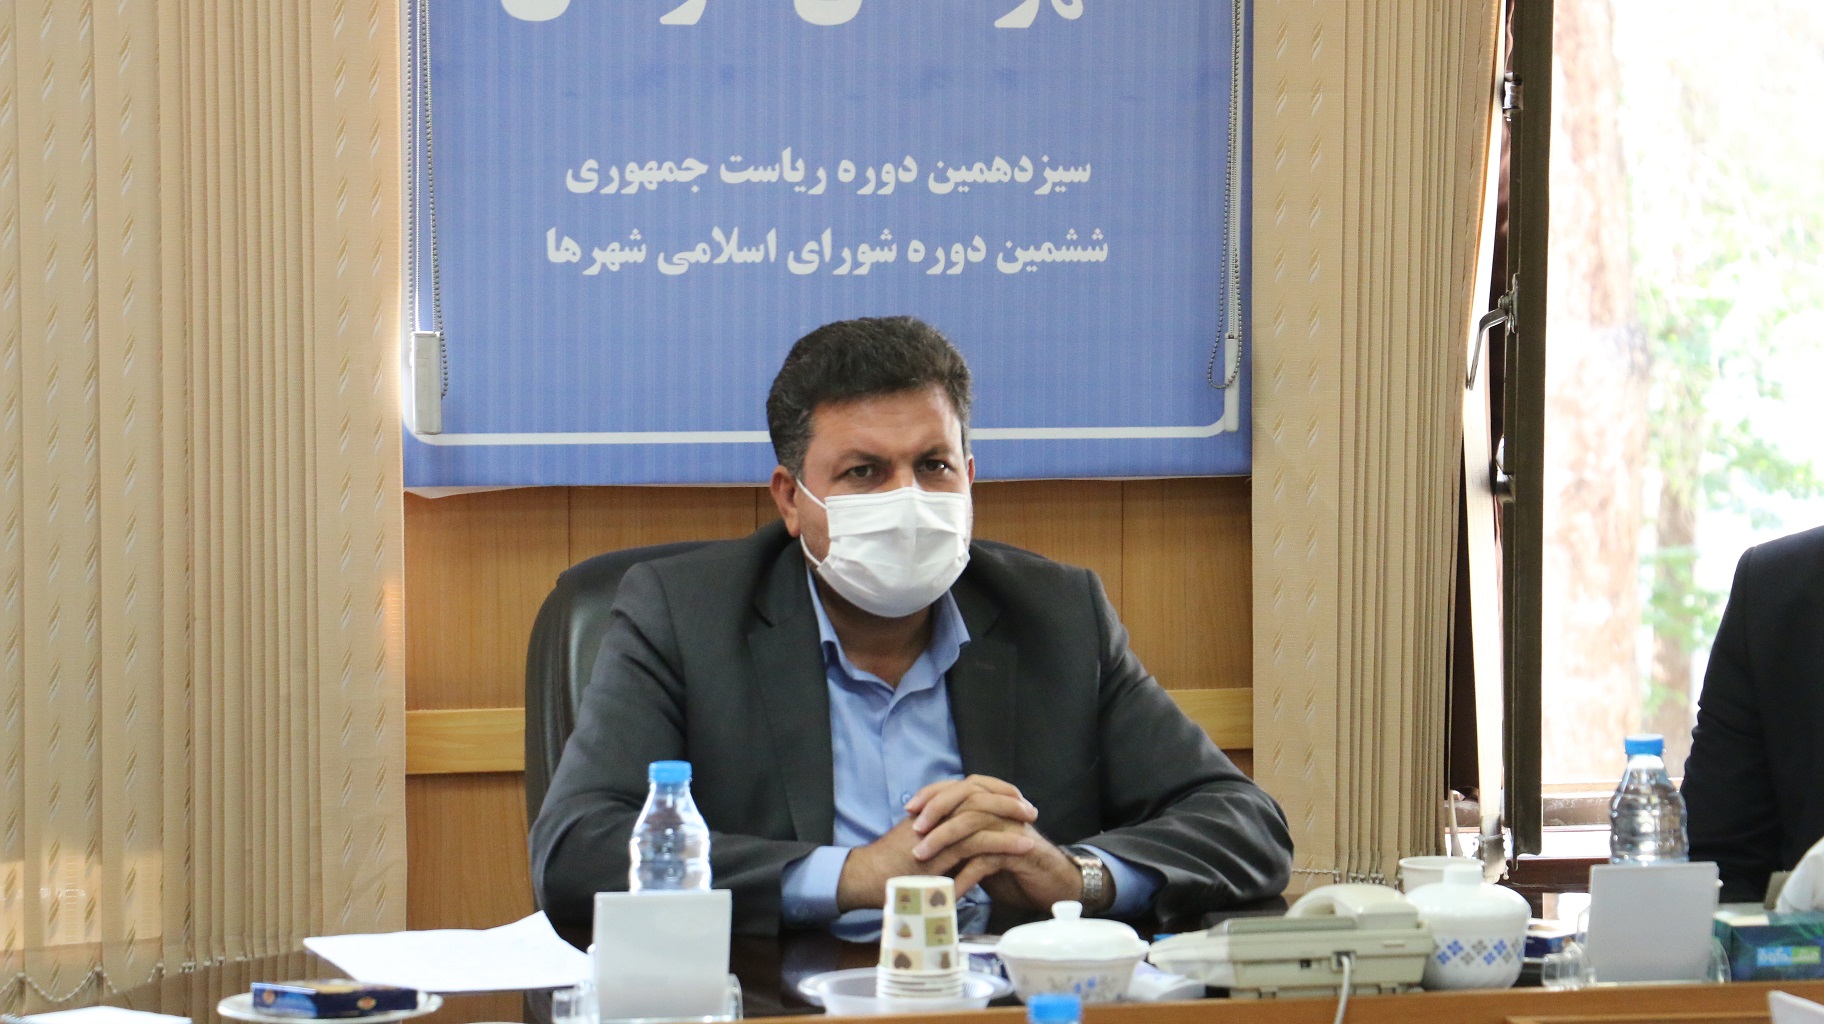   نتایج انتخابات شورای شهر کرمان تغییر نکرد